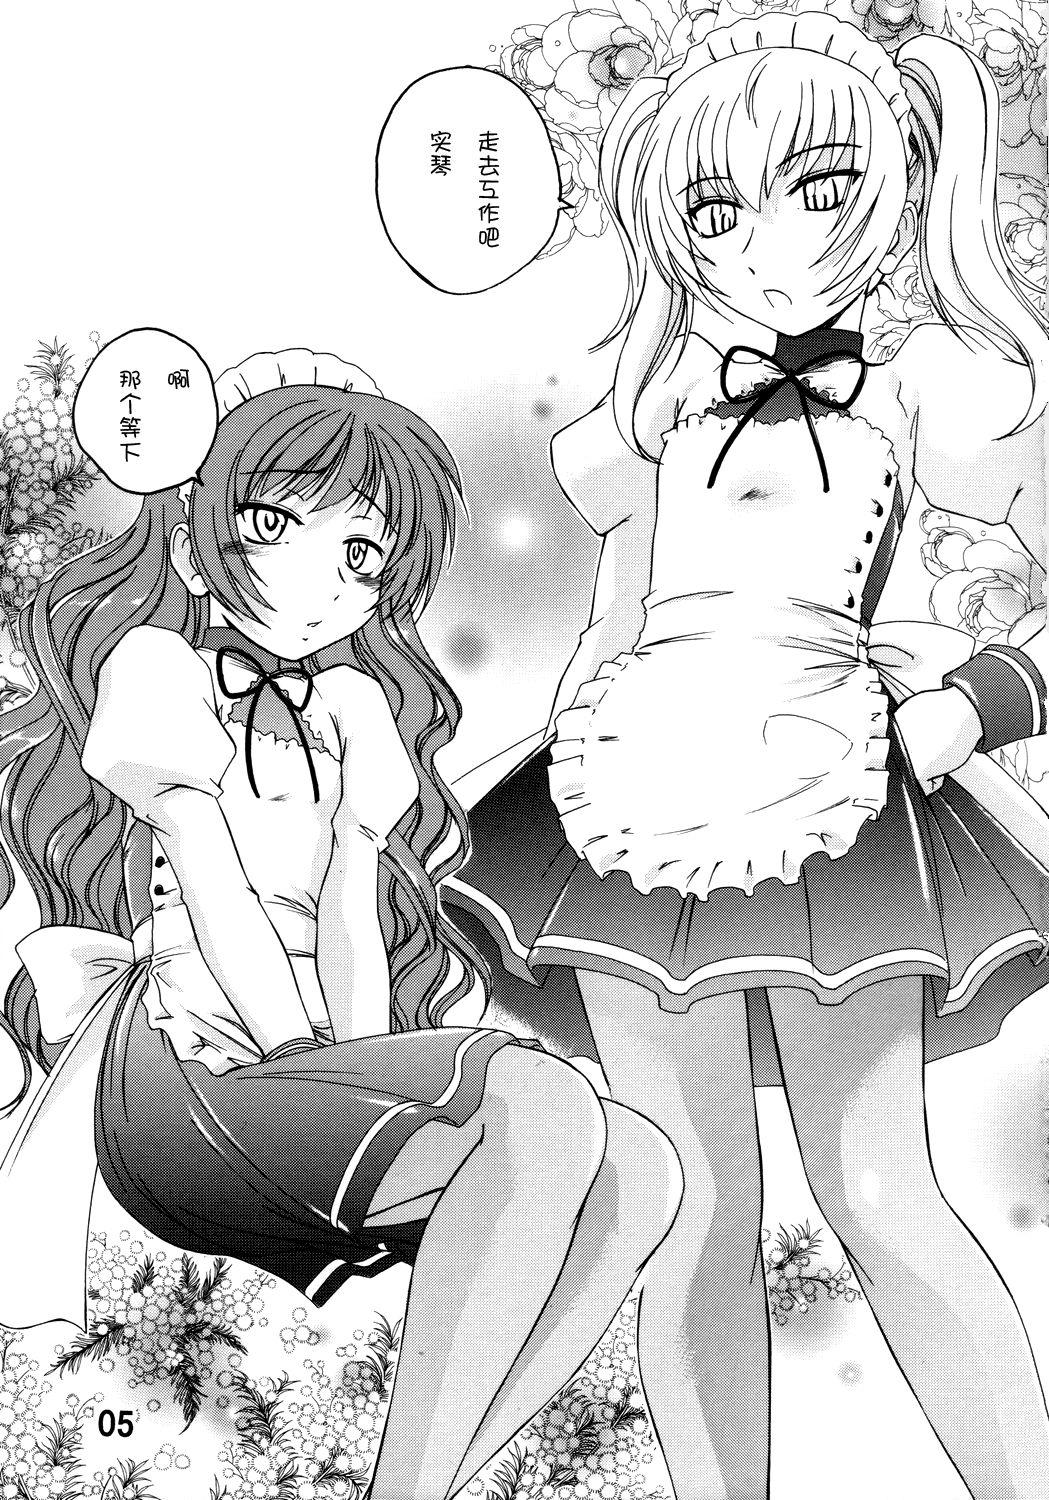 Big Natural Tits Manga Sangyou Haikibutsu 11 - Comic Industrial Wastes 11 - Princess princess Gay Uniform - Page 4